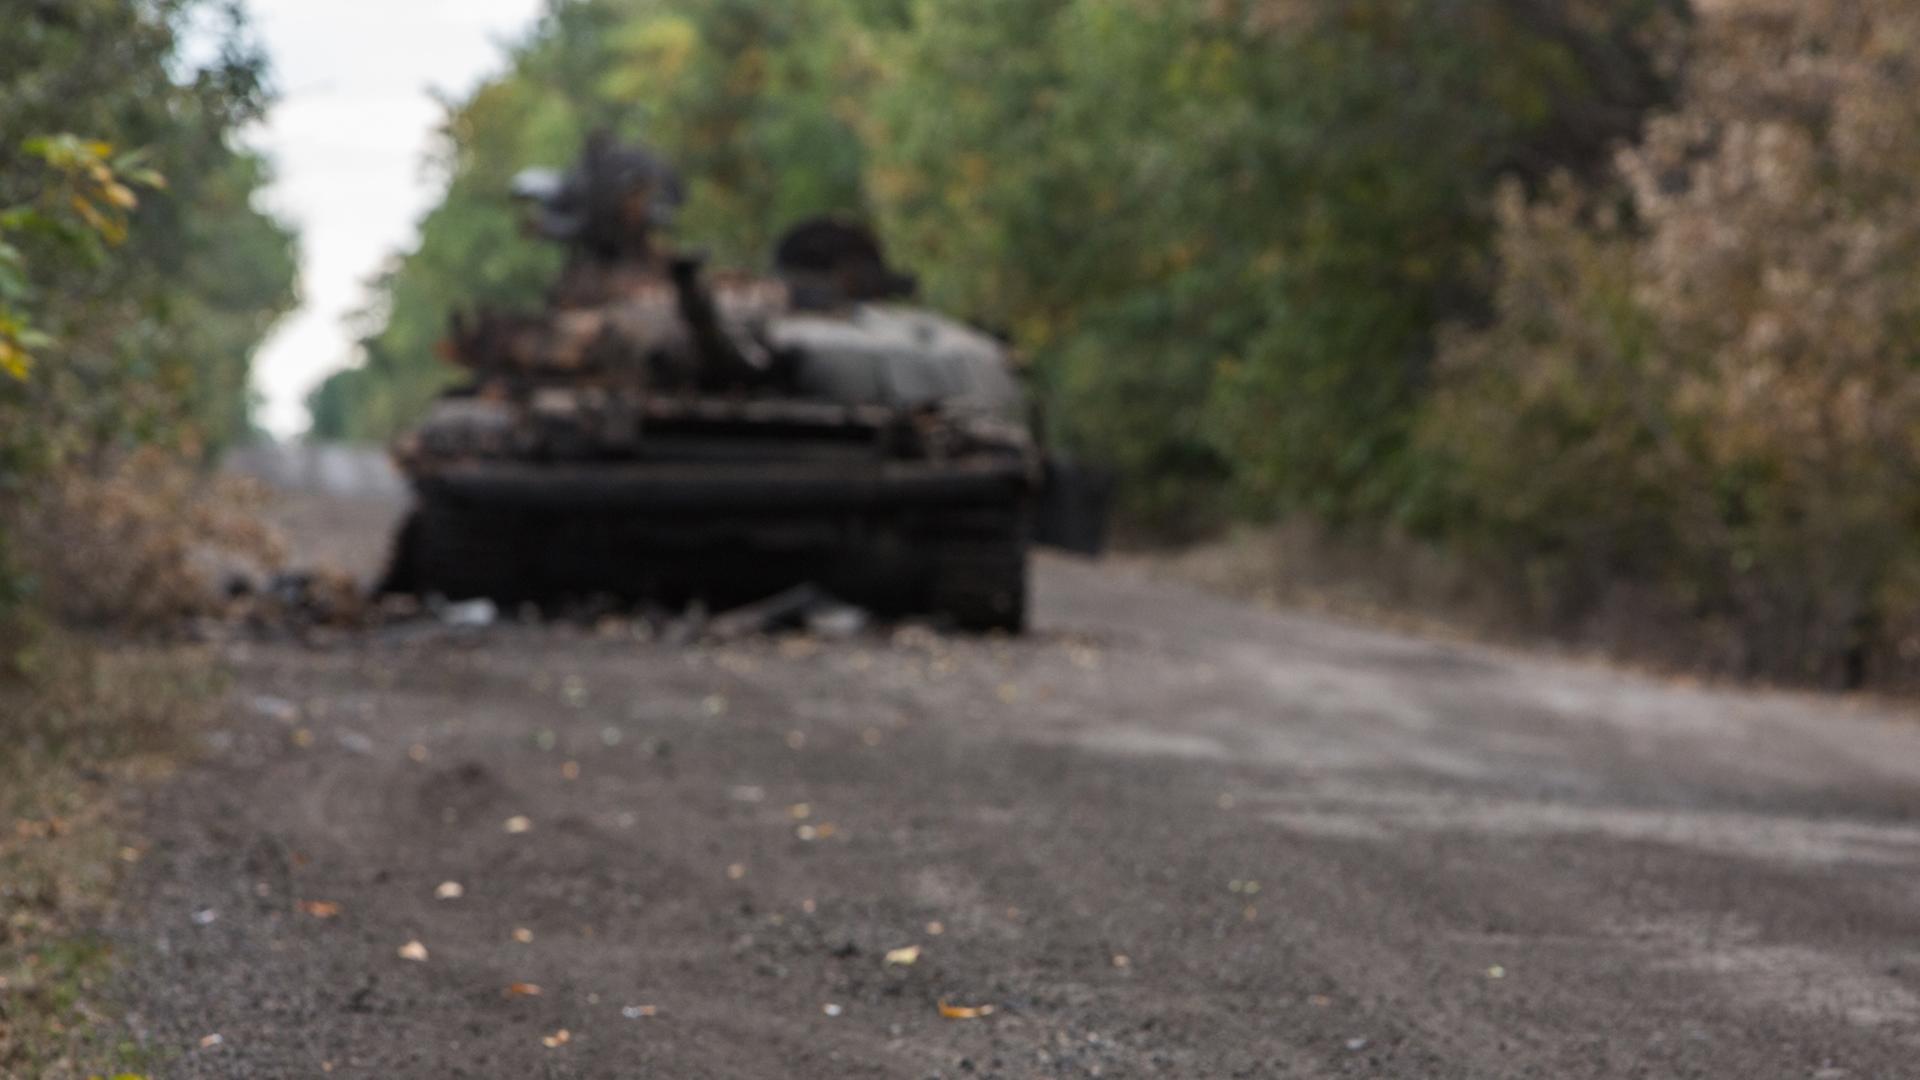 Mörsergranate und ausgebrannter ukrainischer Panzer in der Nähe von Lugansk